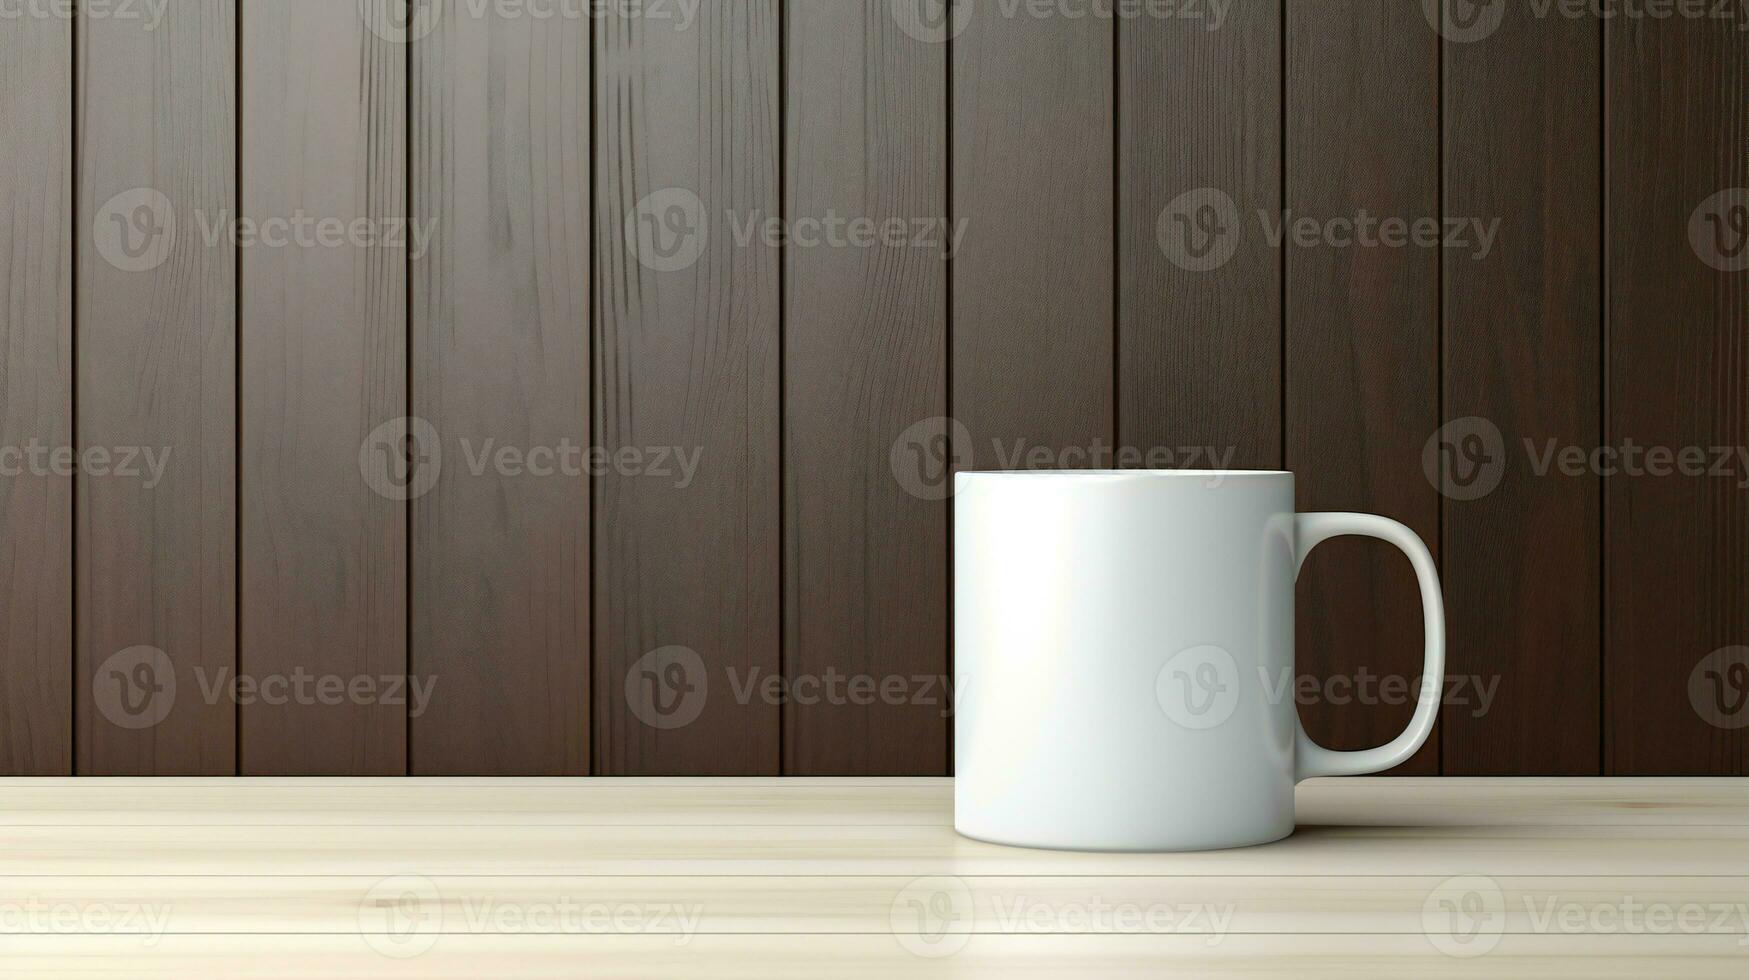 blanco café jarra en de madera mesa con de madera pared antecedentes ai generativo foto